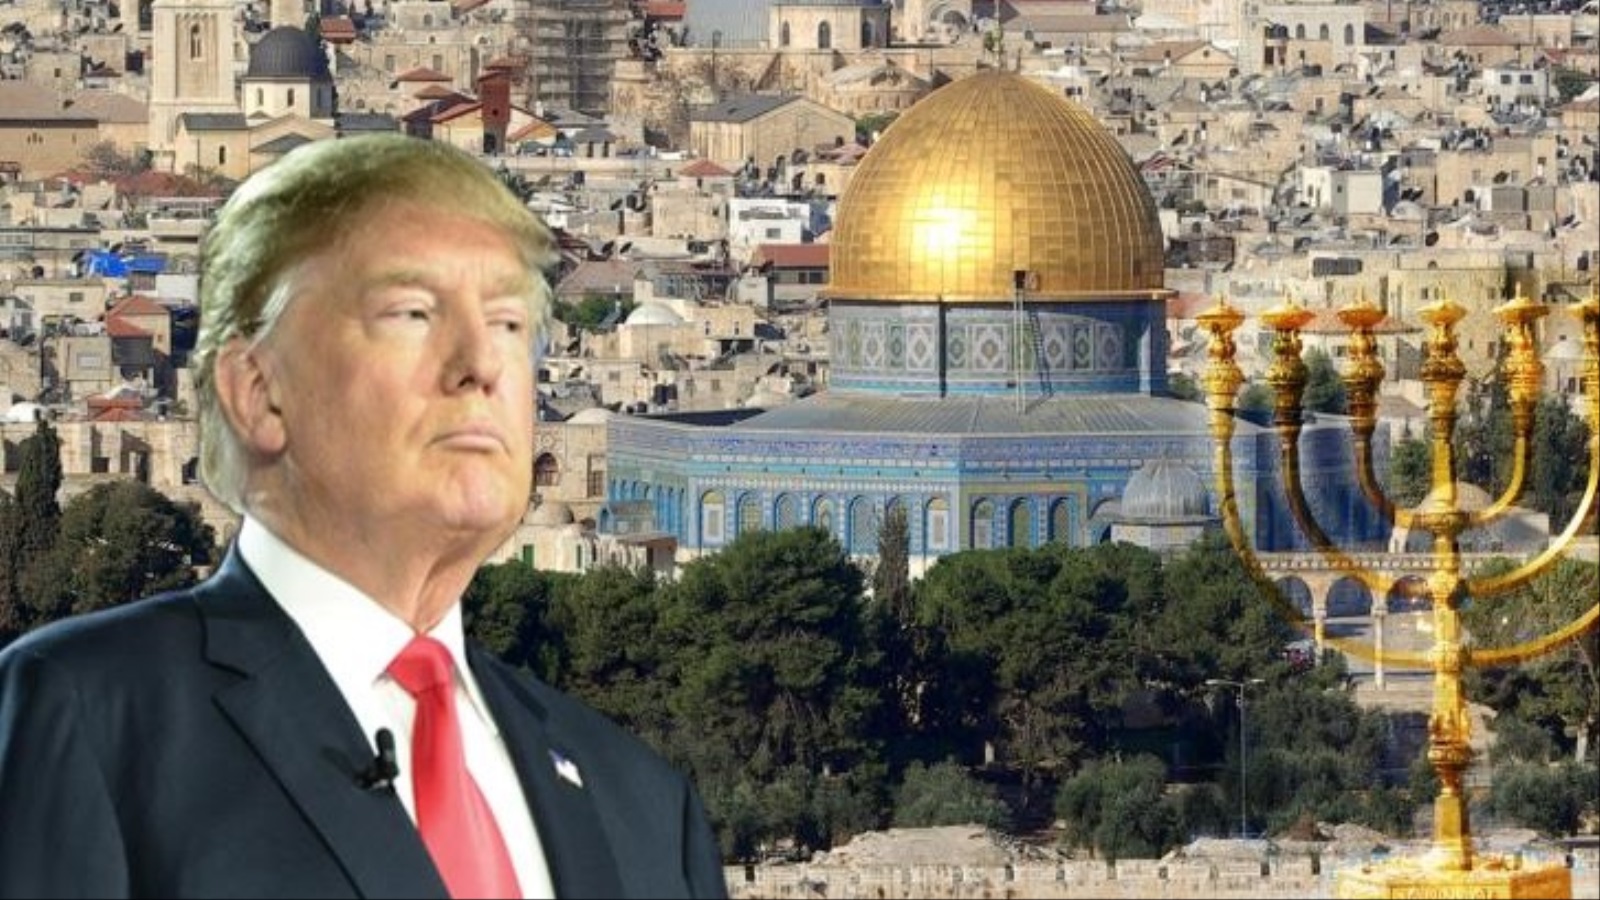 القدس؛ عروس عروبة العرب، يعلن الرئيس الأمريكي ترامب أنه سينقل سفارة بلاده إليها، في خطوة استفزازية لمشاعر العرب والمسلمين، ولا زال العرب في غفوتهم